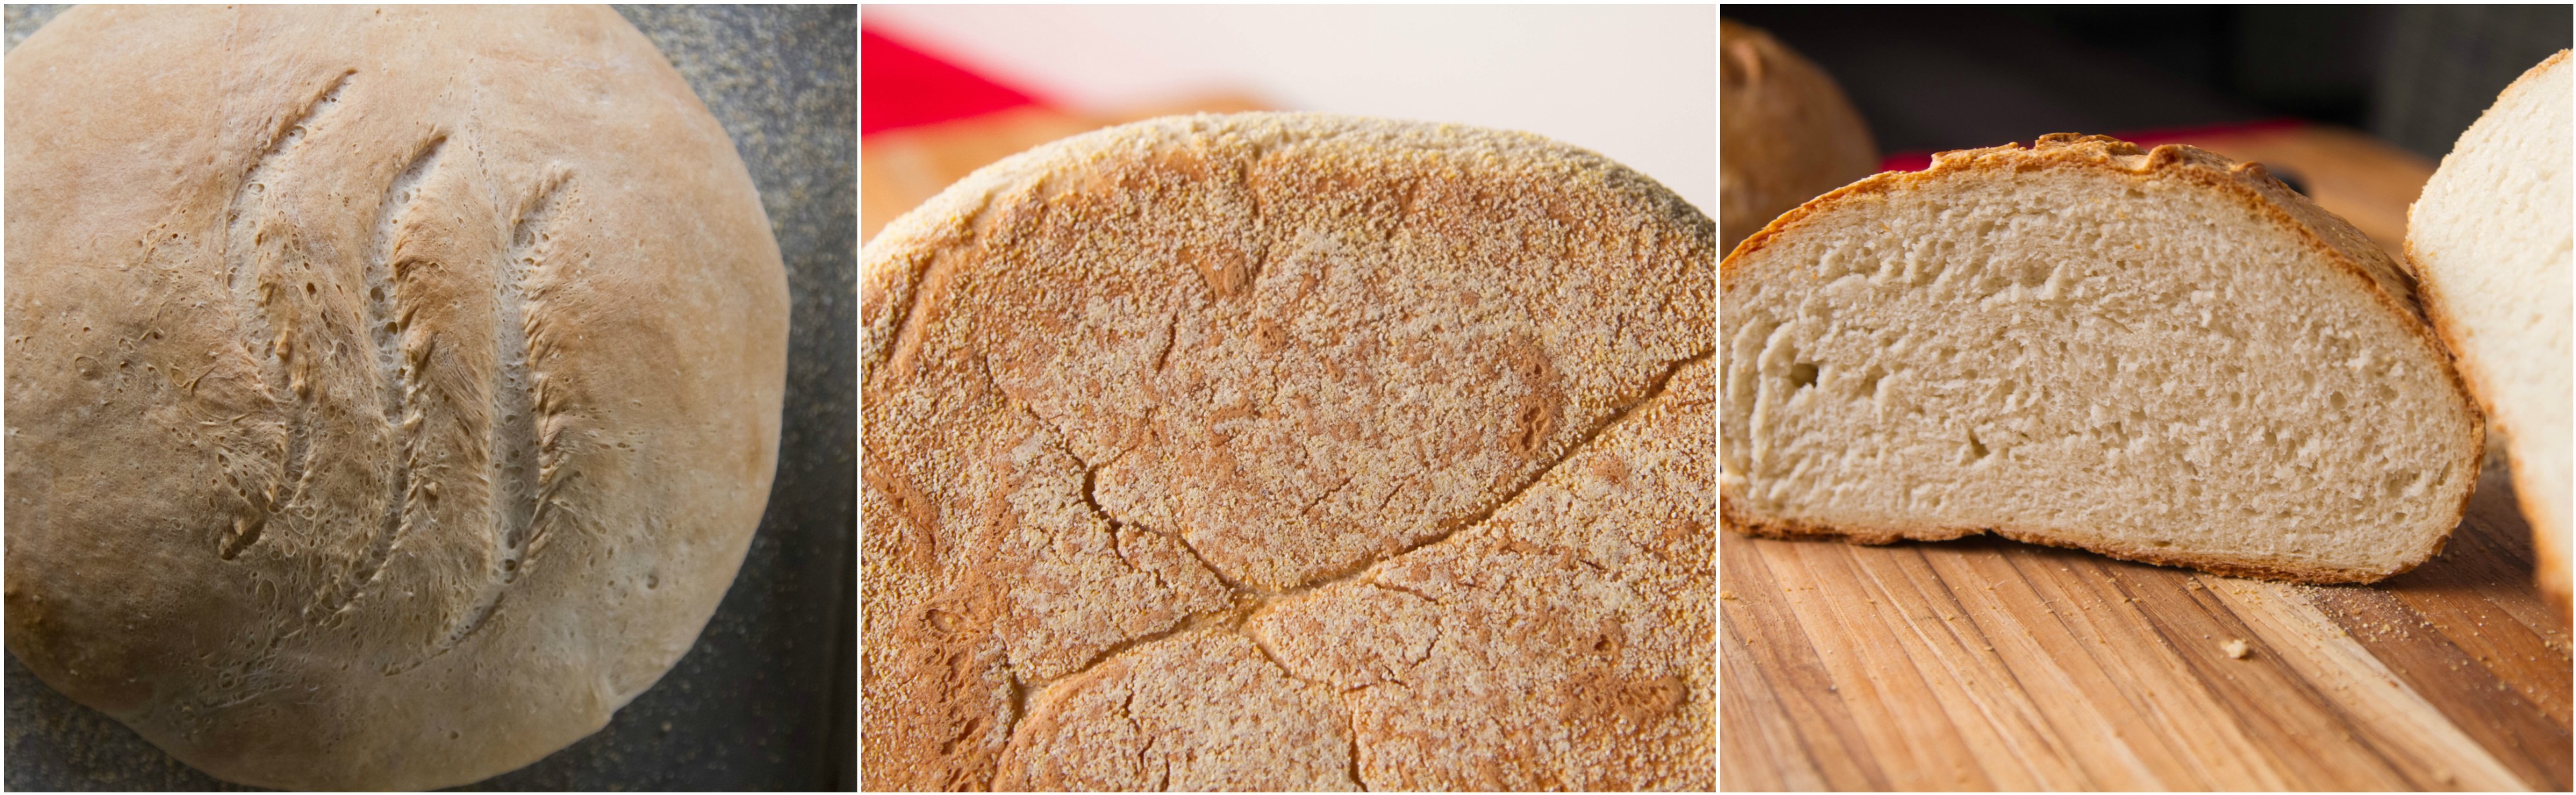 Kijkgat Methode Schoolonderwijs Homemade Bread: Temperature is Key | ThermoWorks